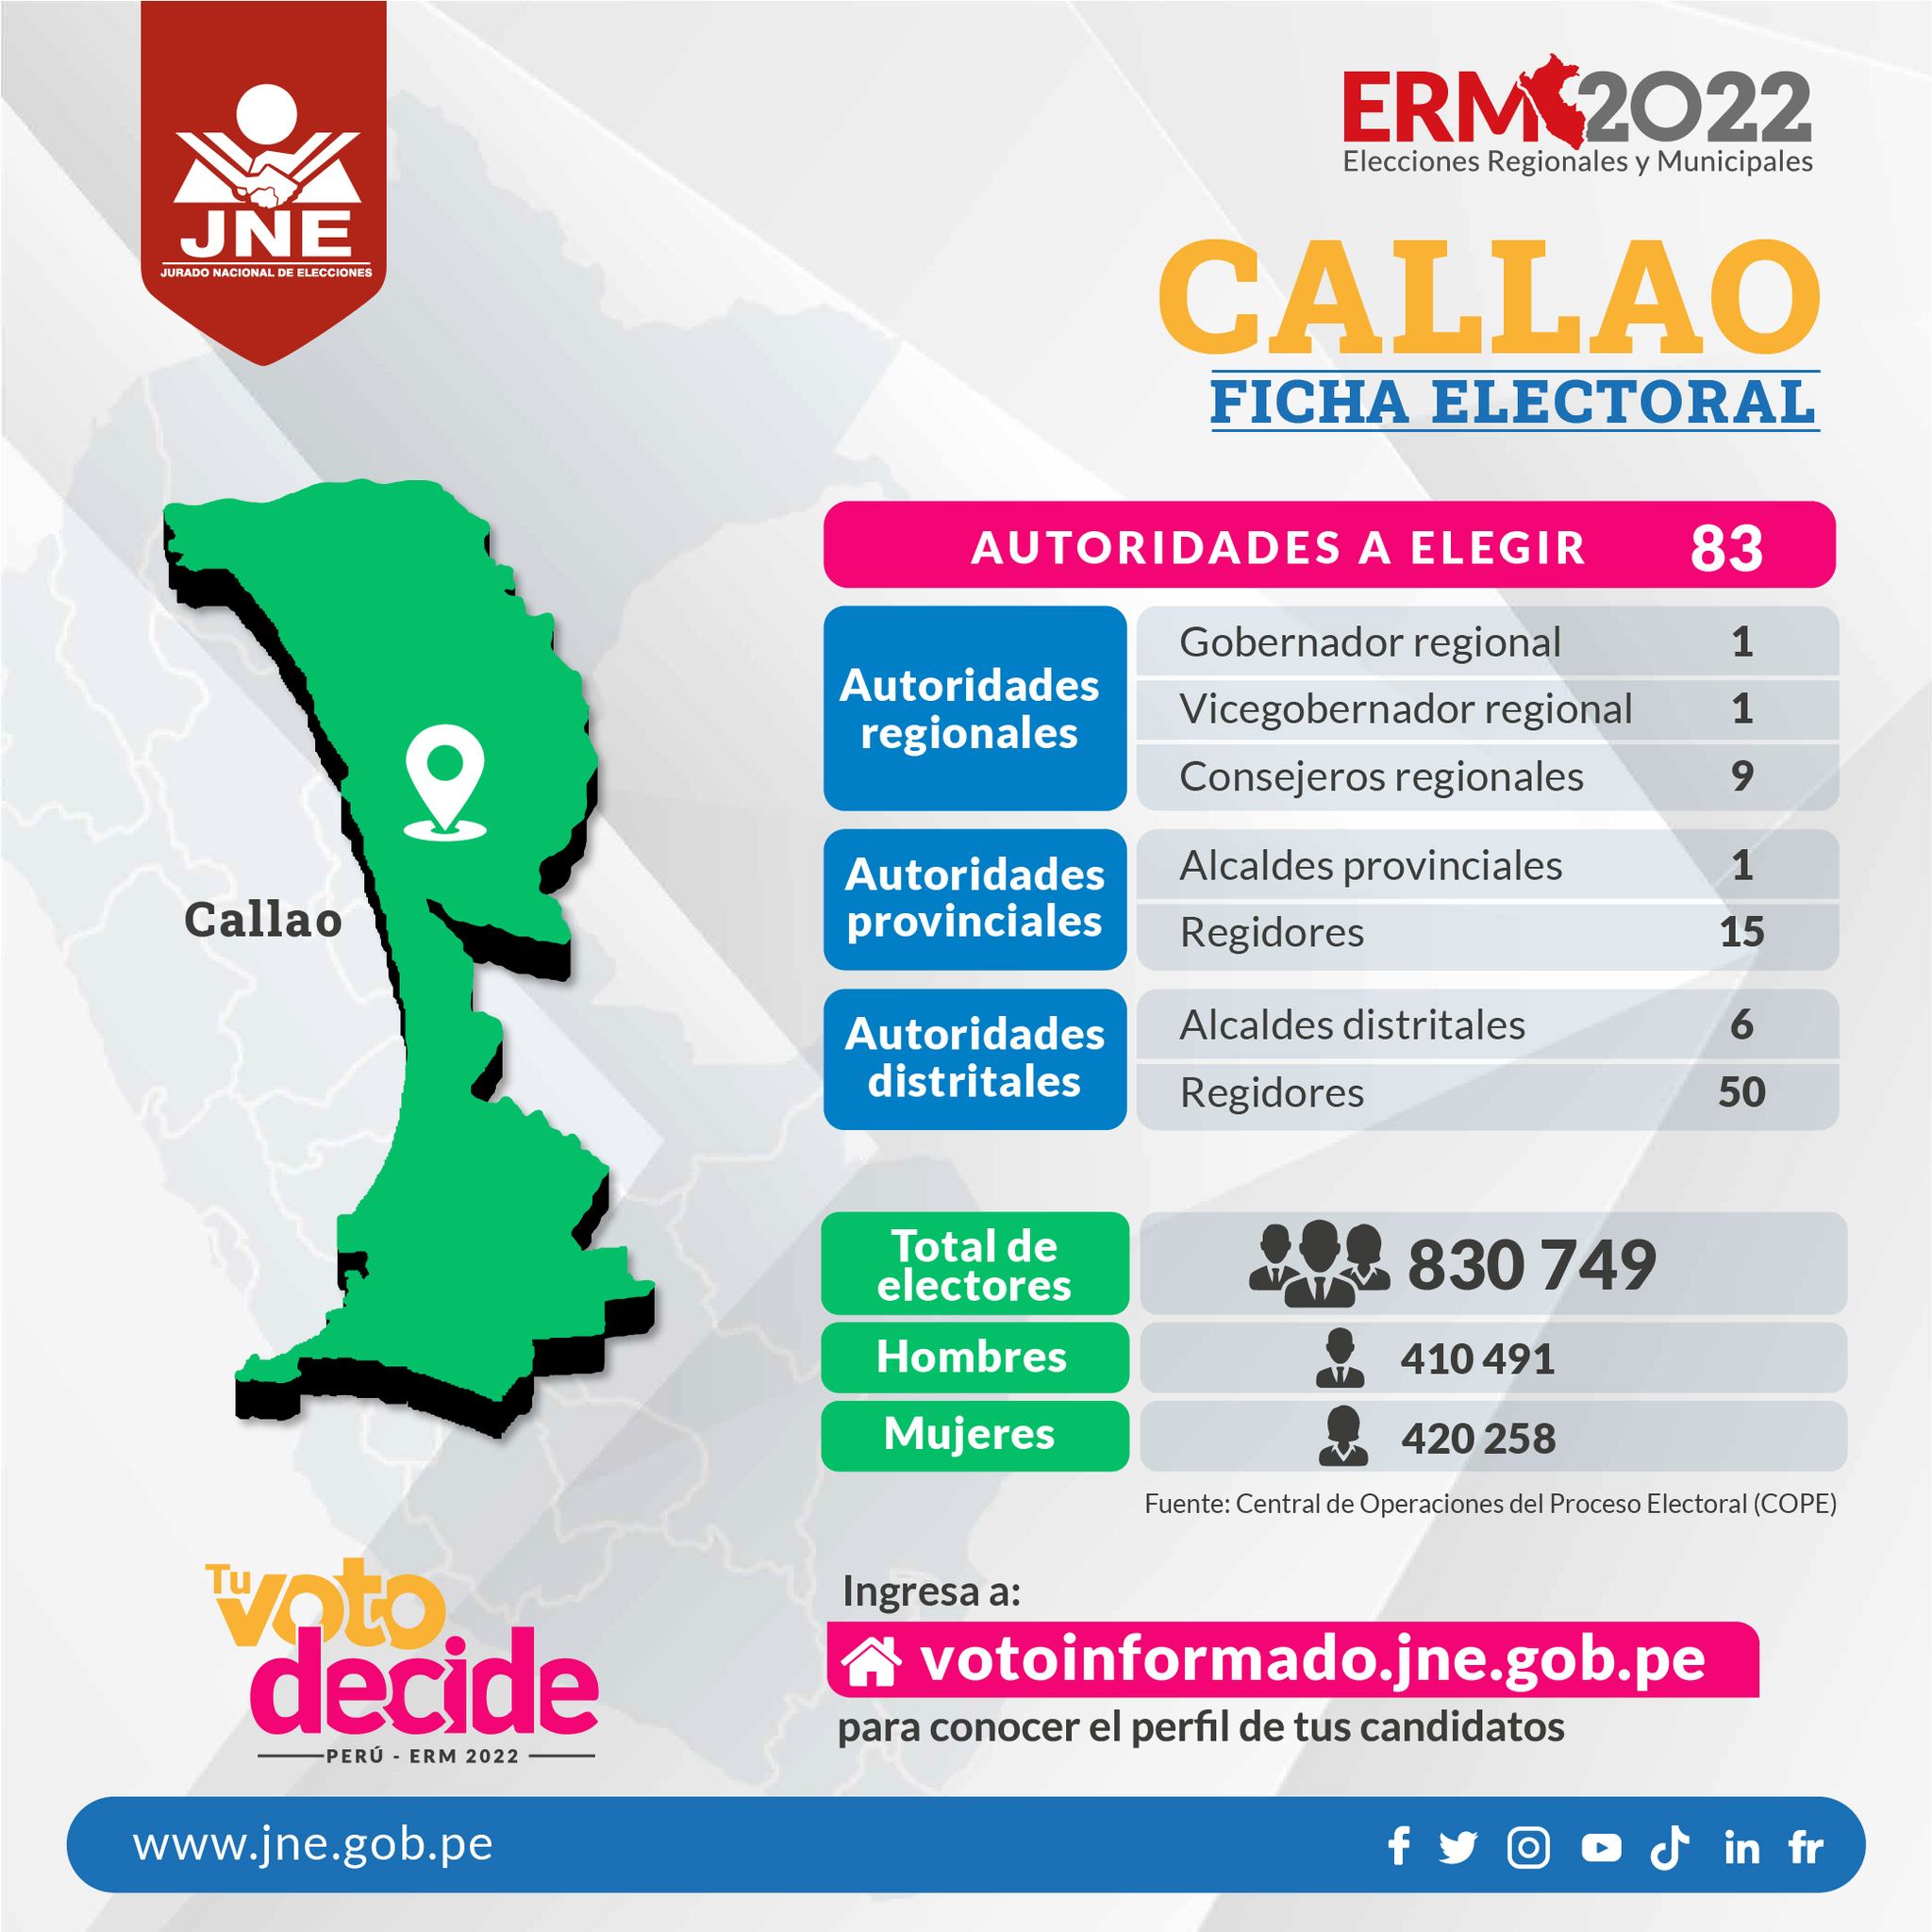 Elecciones Municipales y Regionales 2022: Candidatos al Callao